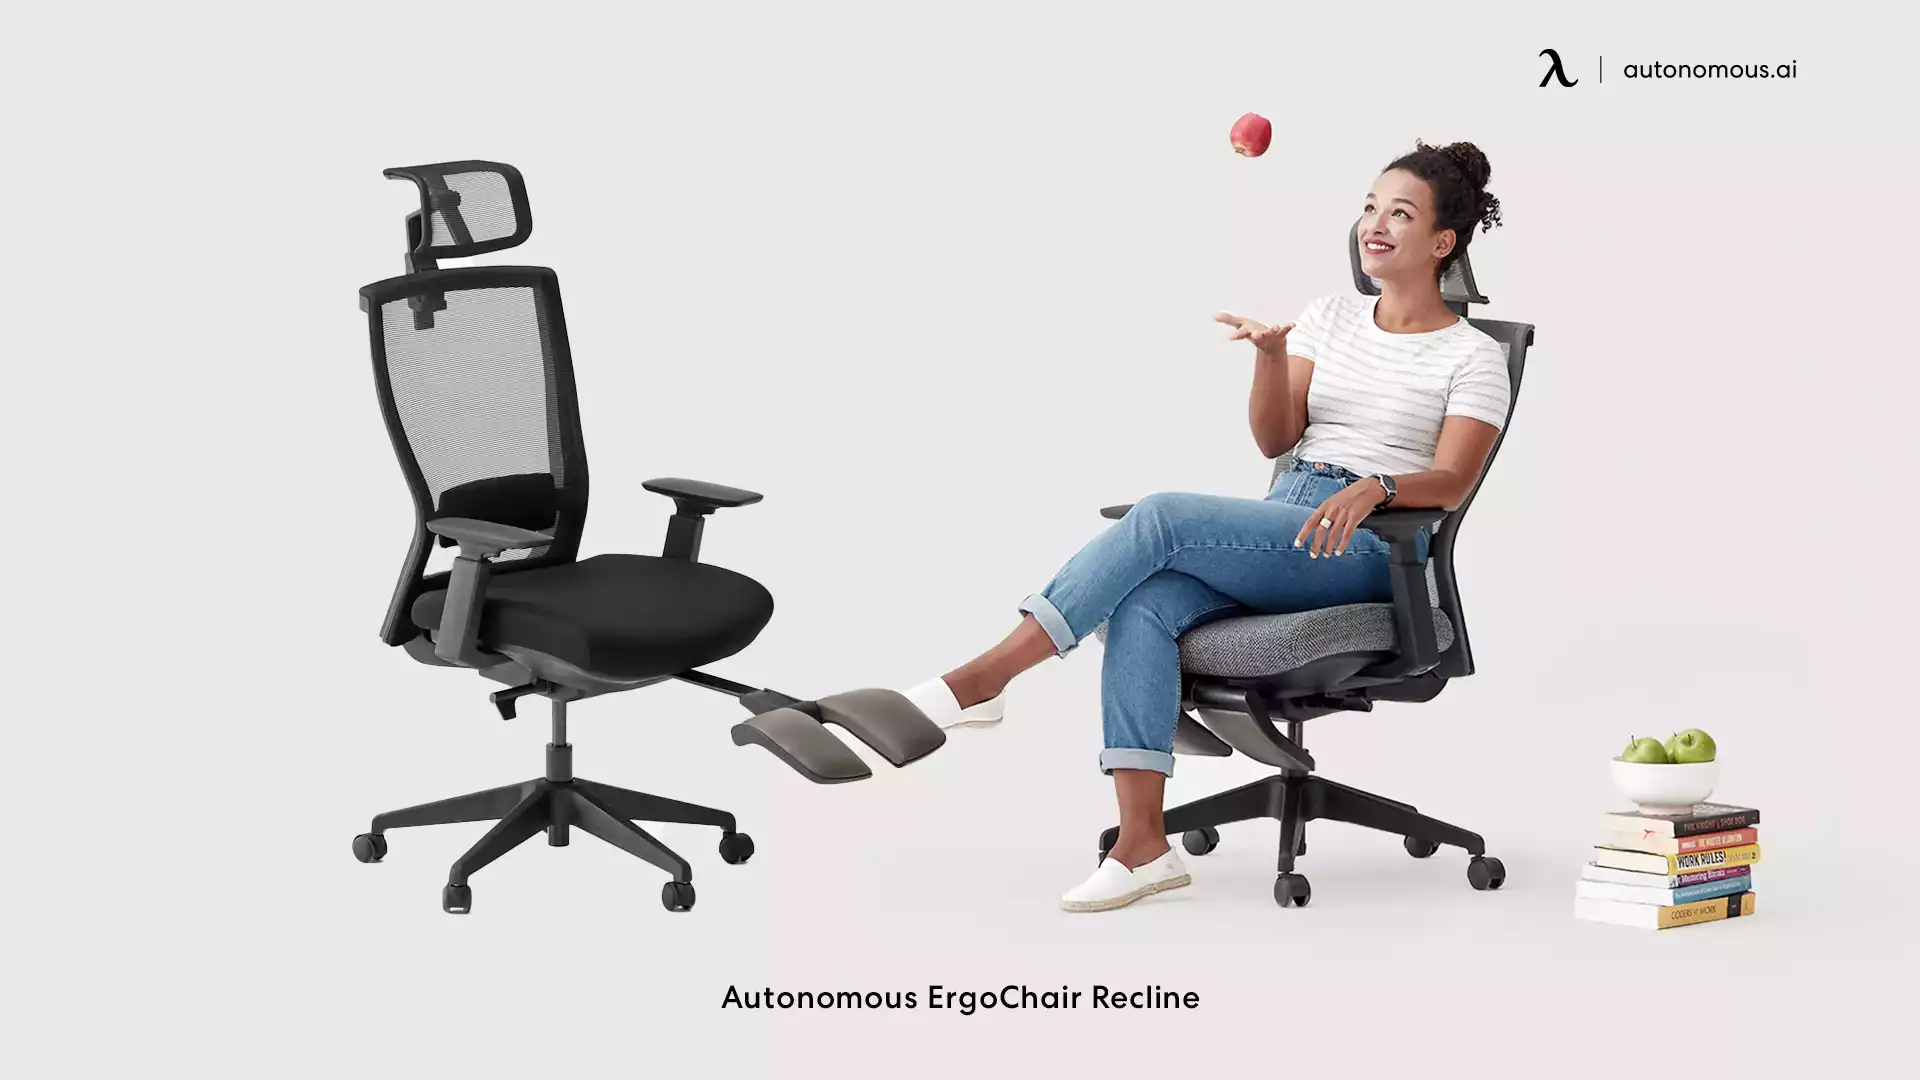 ErgoChair Recline by Autonomous mesh office chair